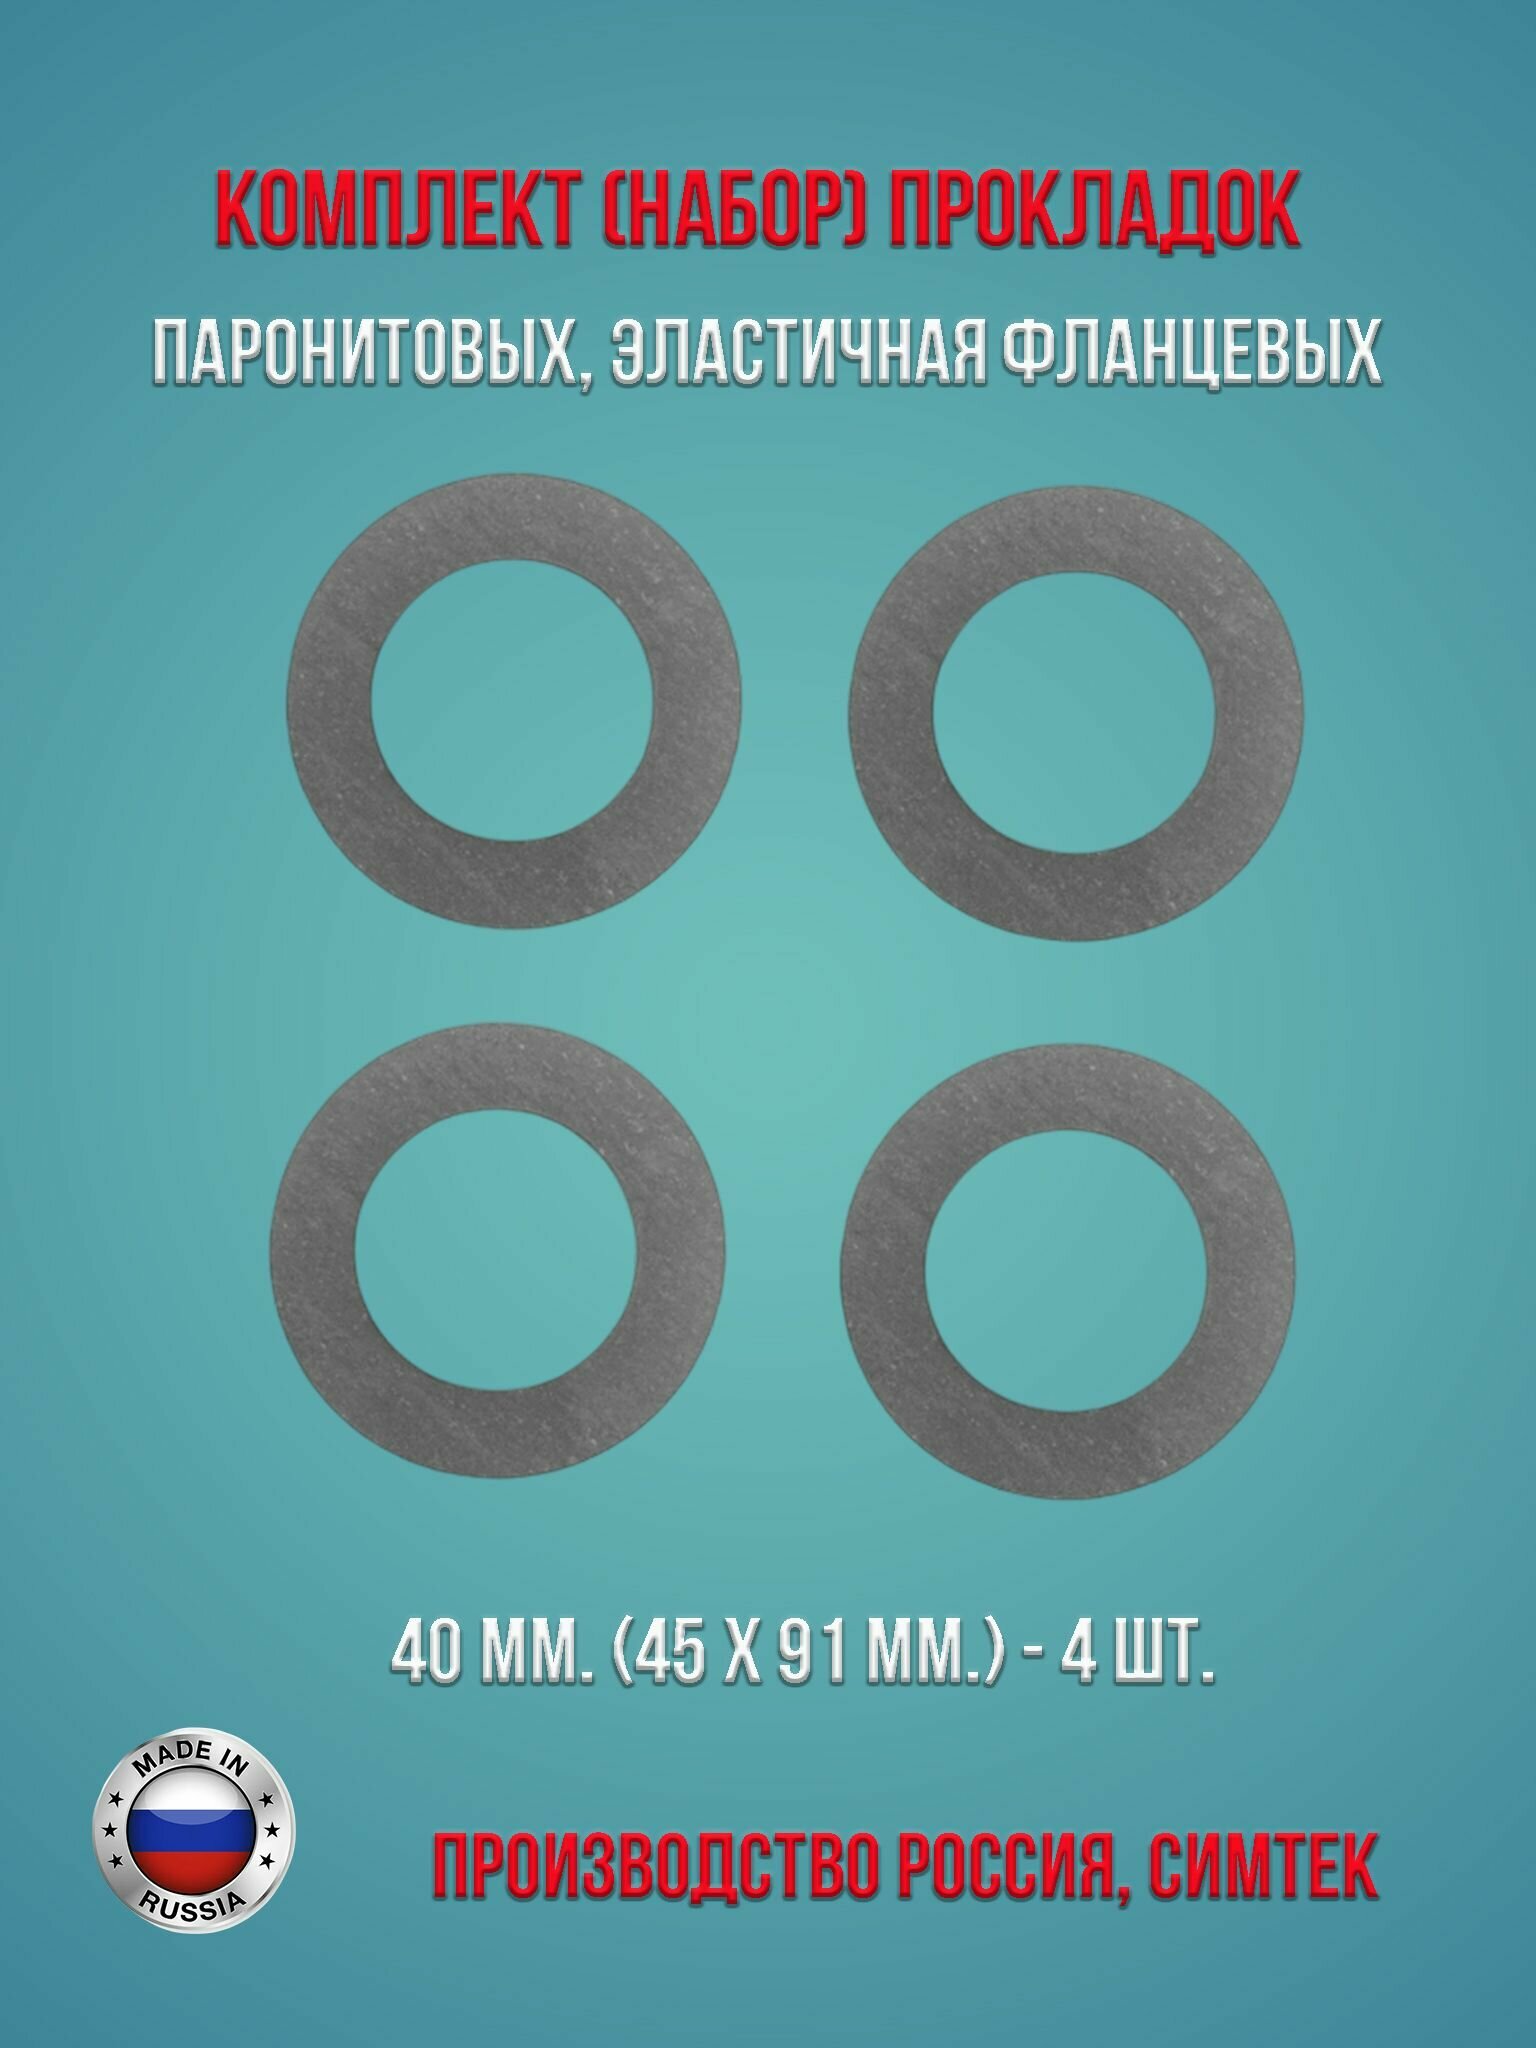 Комплект (набор) паронитовых, эластичная фланцевых прокладок в соответствии с ГОСТ 15180-86 диаметр 40 мм. (45 х 91 мм.), 4 штуки